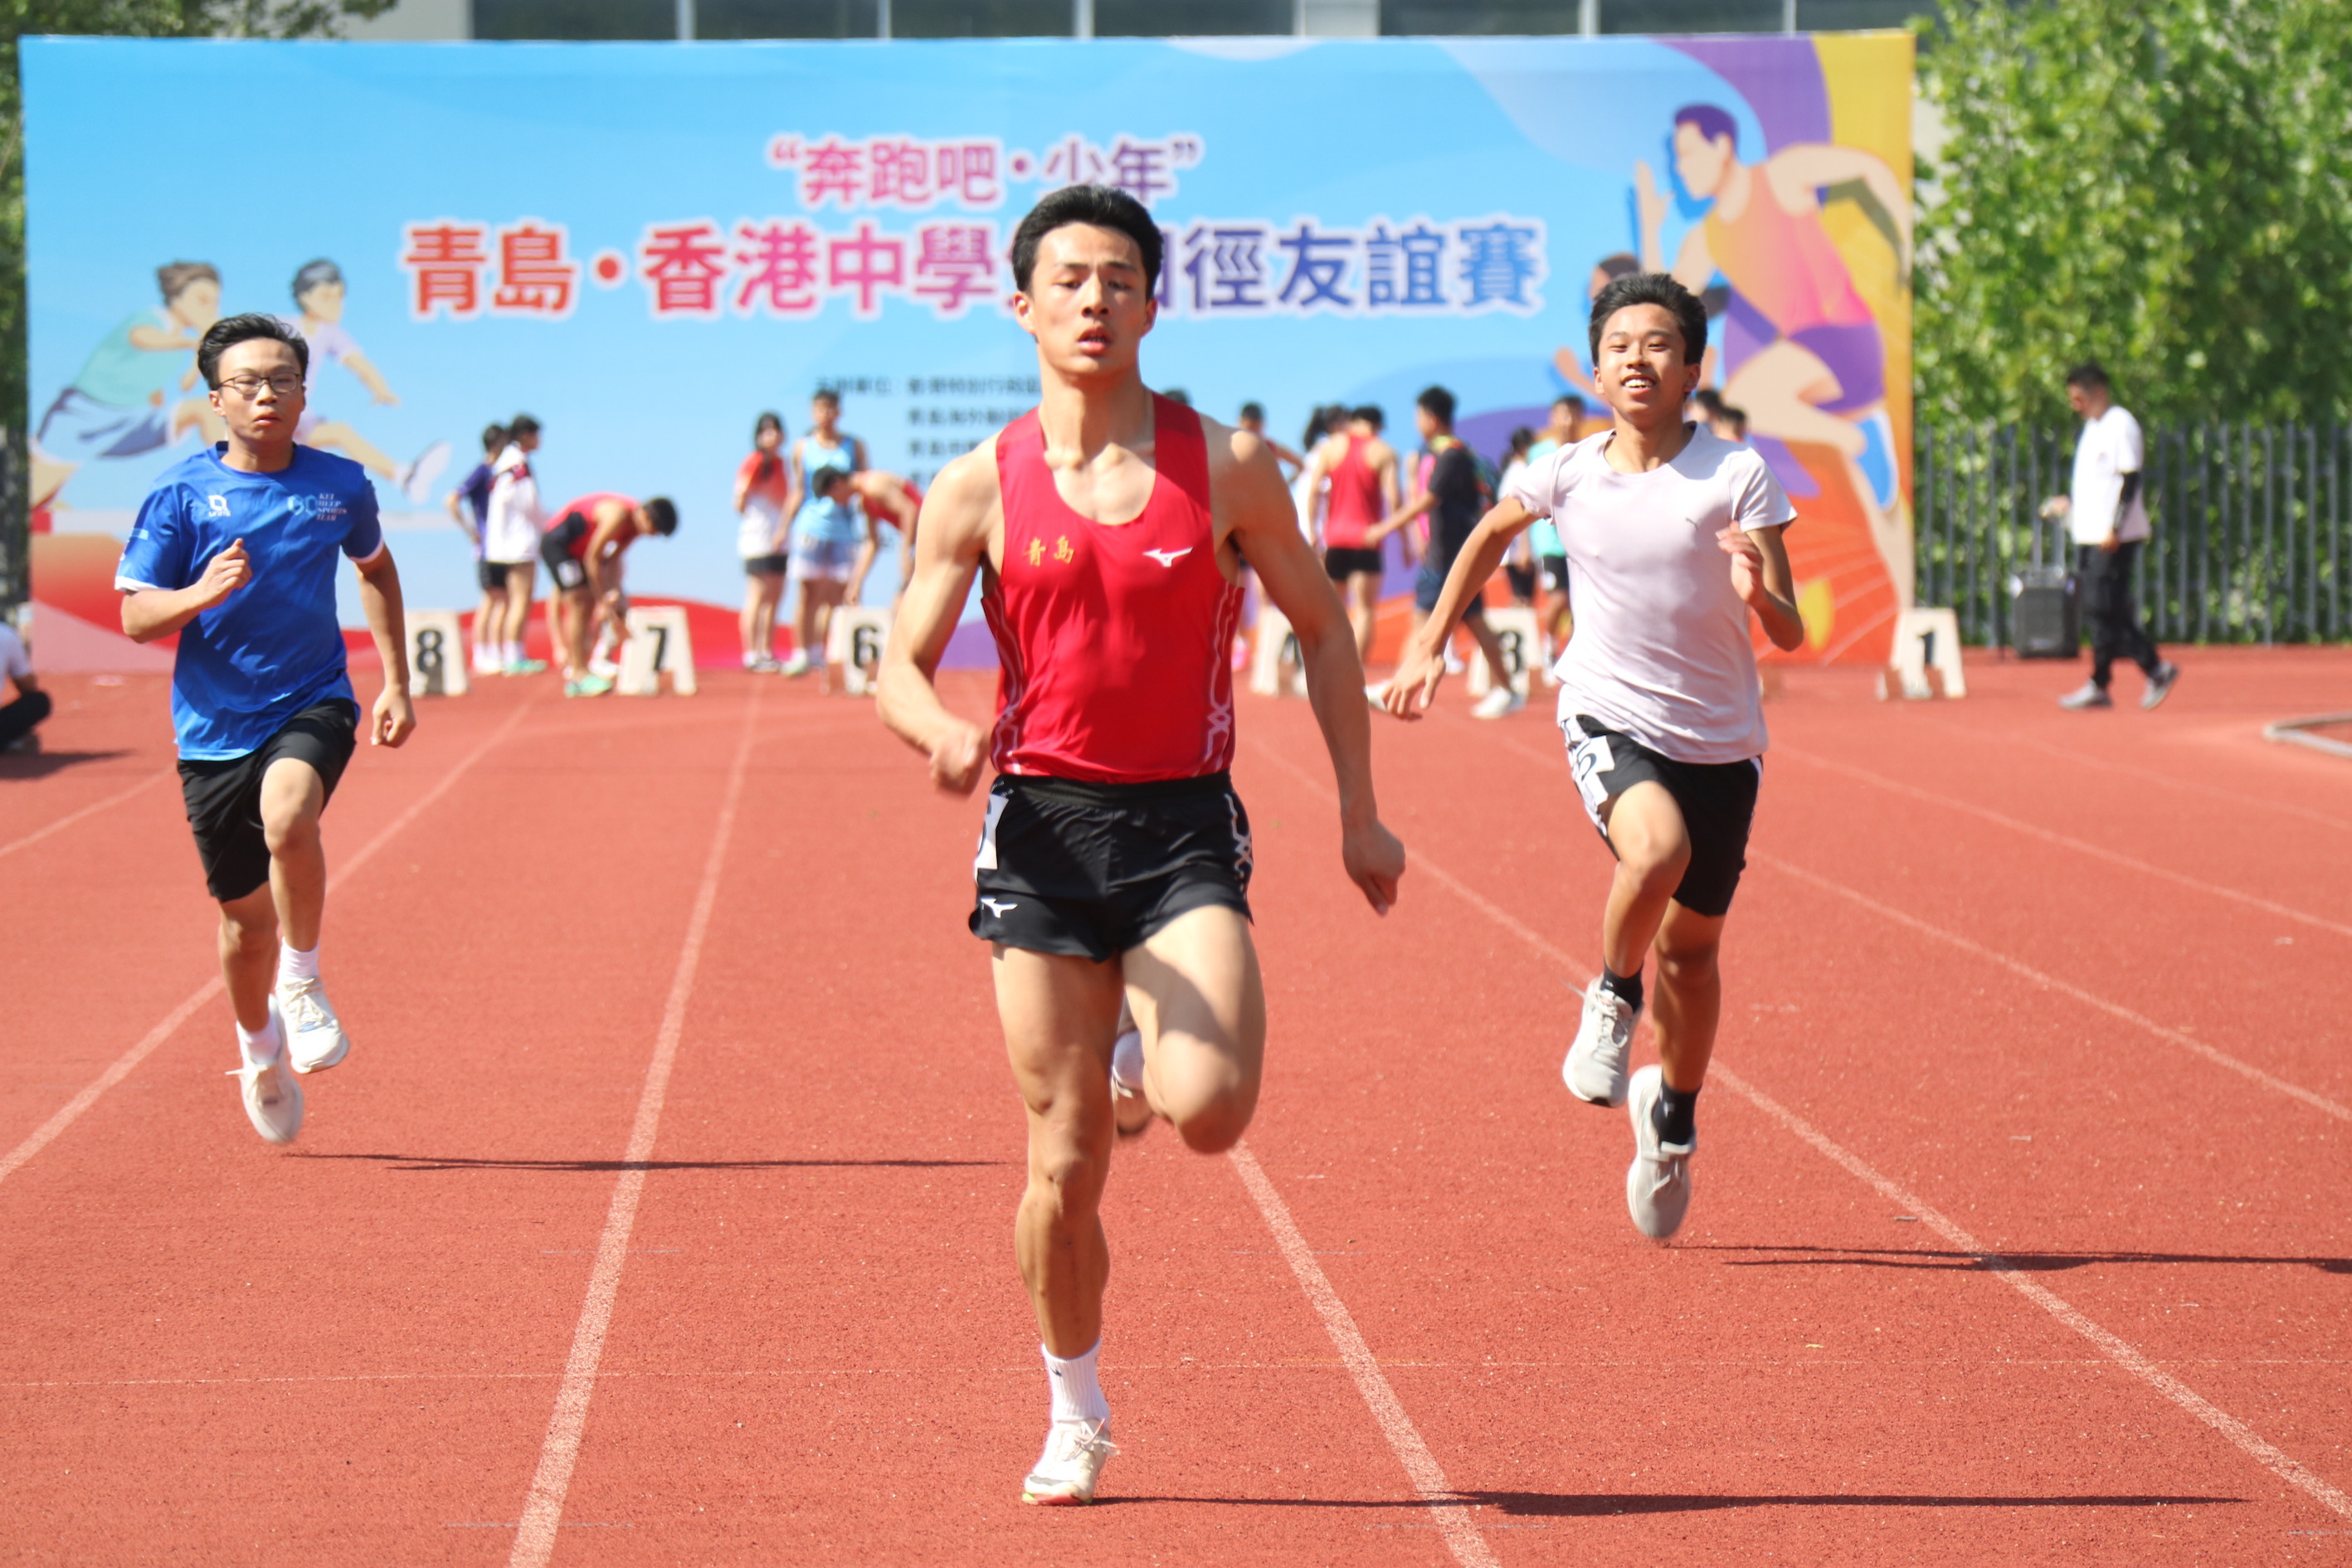 青島香港兩地學子田徑友誼賽舉行